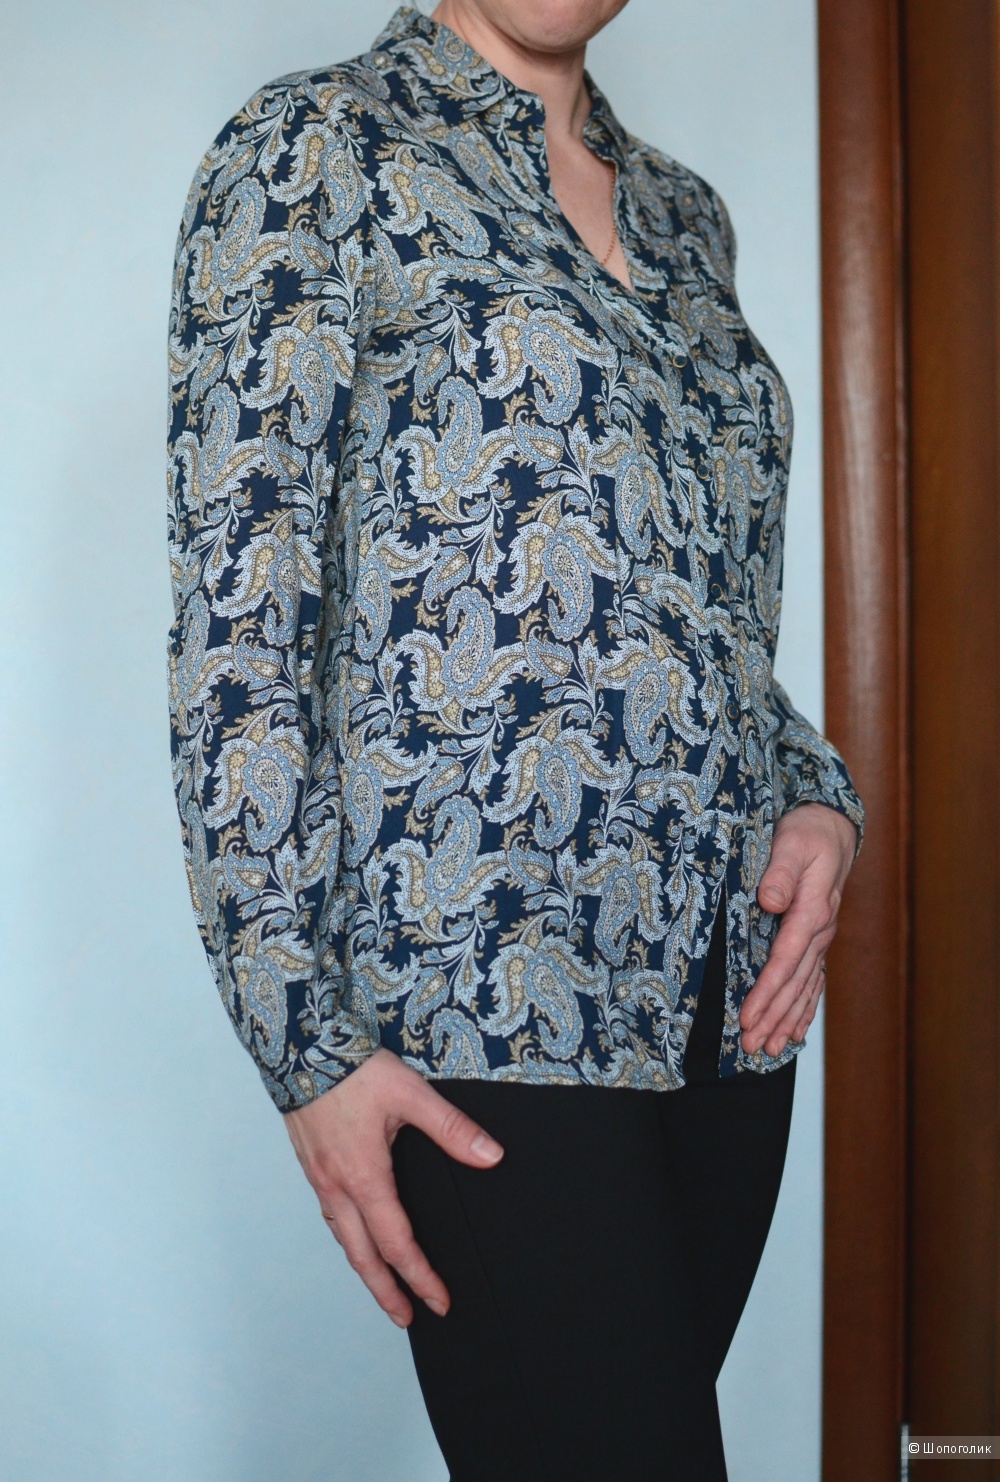 Блузка синяя с цветочным принтом, вискоза, Massimo Dutti, р 46 росс.